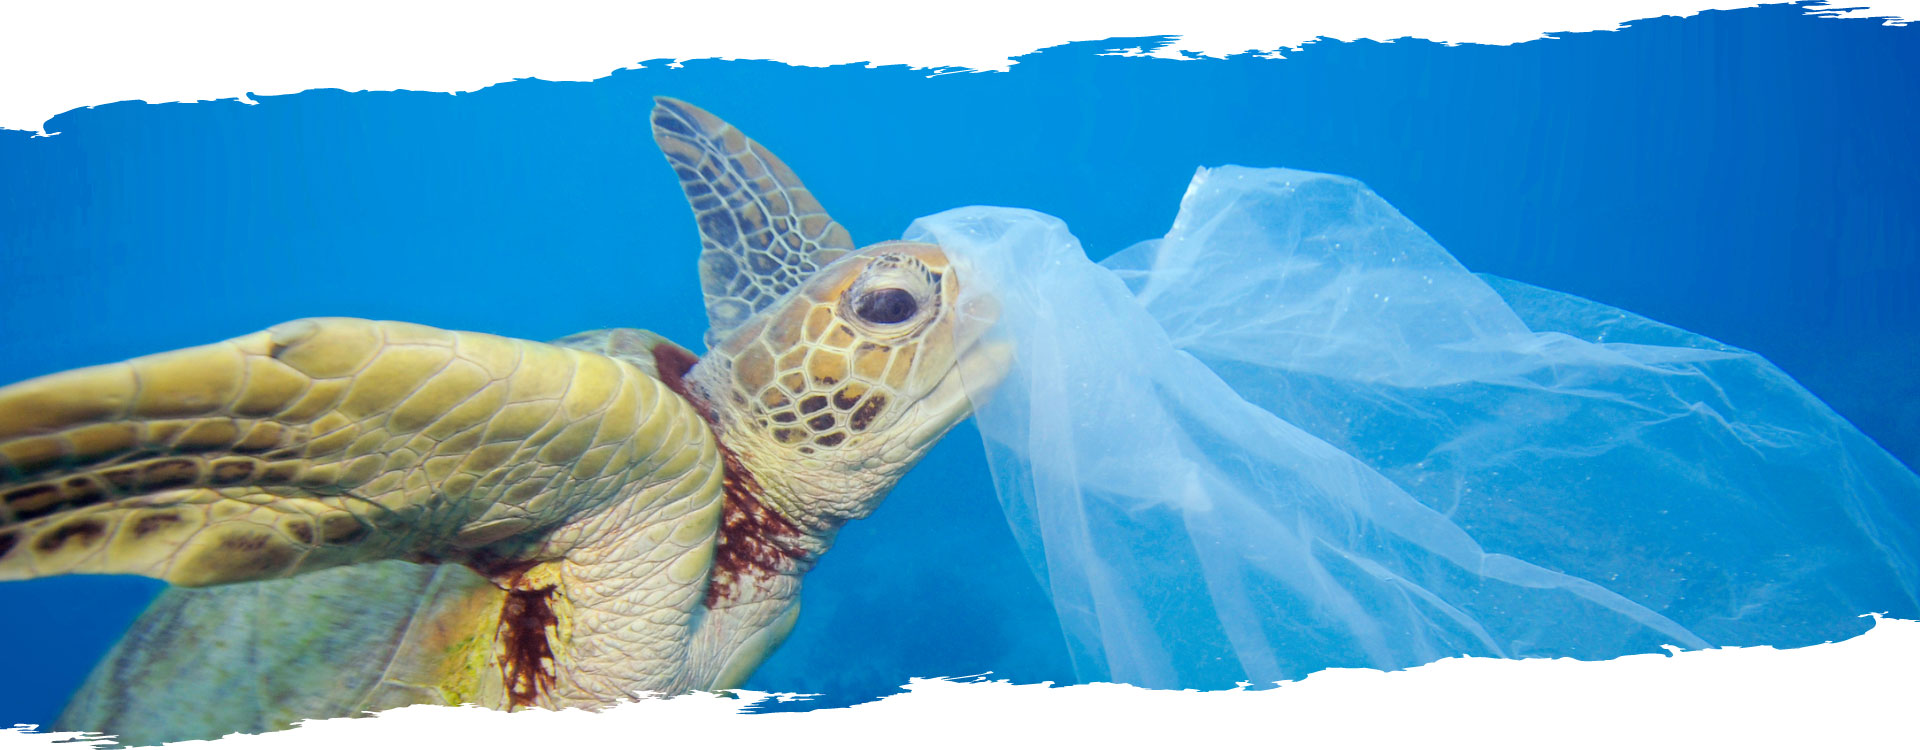 tortue marine qui a la tête coincé dans un sac plastique